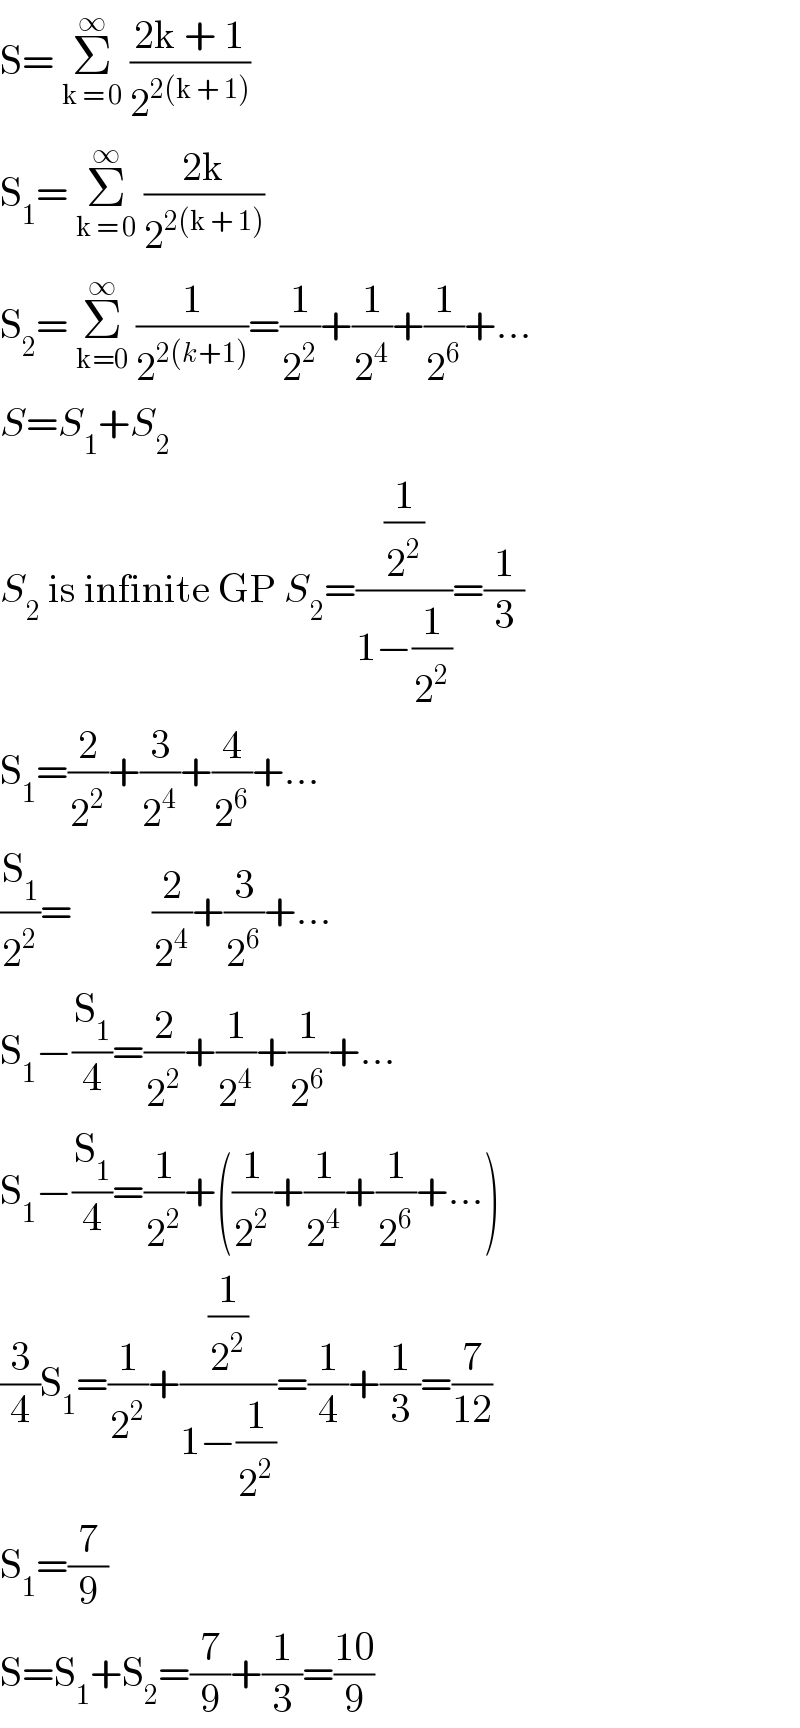 S= Σ_(k = 0) ^∞  ((2k + 1)/2^(2(k + 1)) )  S_1 = Σ_(k = 0) ^∞  ((2k)/2^(2(k + 1)) )  S_2 = Σ_(k=0) ^∞  (1/2^(2(k+1)) )=(1/2^2 )+(1/2^4 )+(1/2^6 )+...  S=S_1 +S_2   S_2  is infinite GP S_2 =((1/2^2 )/(1−(1/2^2 )))=(1/3)  S_1 =(2/2^2 )+(3/2^4 )+(4/2^6 )+...  (S_1 /2^2 )=          (2/2^4 )+(3/2^6 )+...  S_1 −(S_1 /4)=(2/2^2 )+(1/2^4 )+(1/2^6 )+...  S_1 −(S_1 /4)=(1/2^2 )+((1/2^2 )+(1/2^4 )+(1/2^6 )+...)  (3/4)S_1 =(1/2^2 )+((1/2^2 )/(1−(1/2^2 )))=(1/4)+(1/3)=(7/(12))  S_1 =(7/9)  S=S_1 +S_2 =(7/9)+(1/3)=((10)/9)  